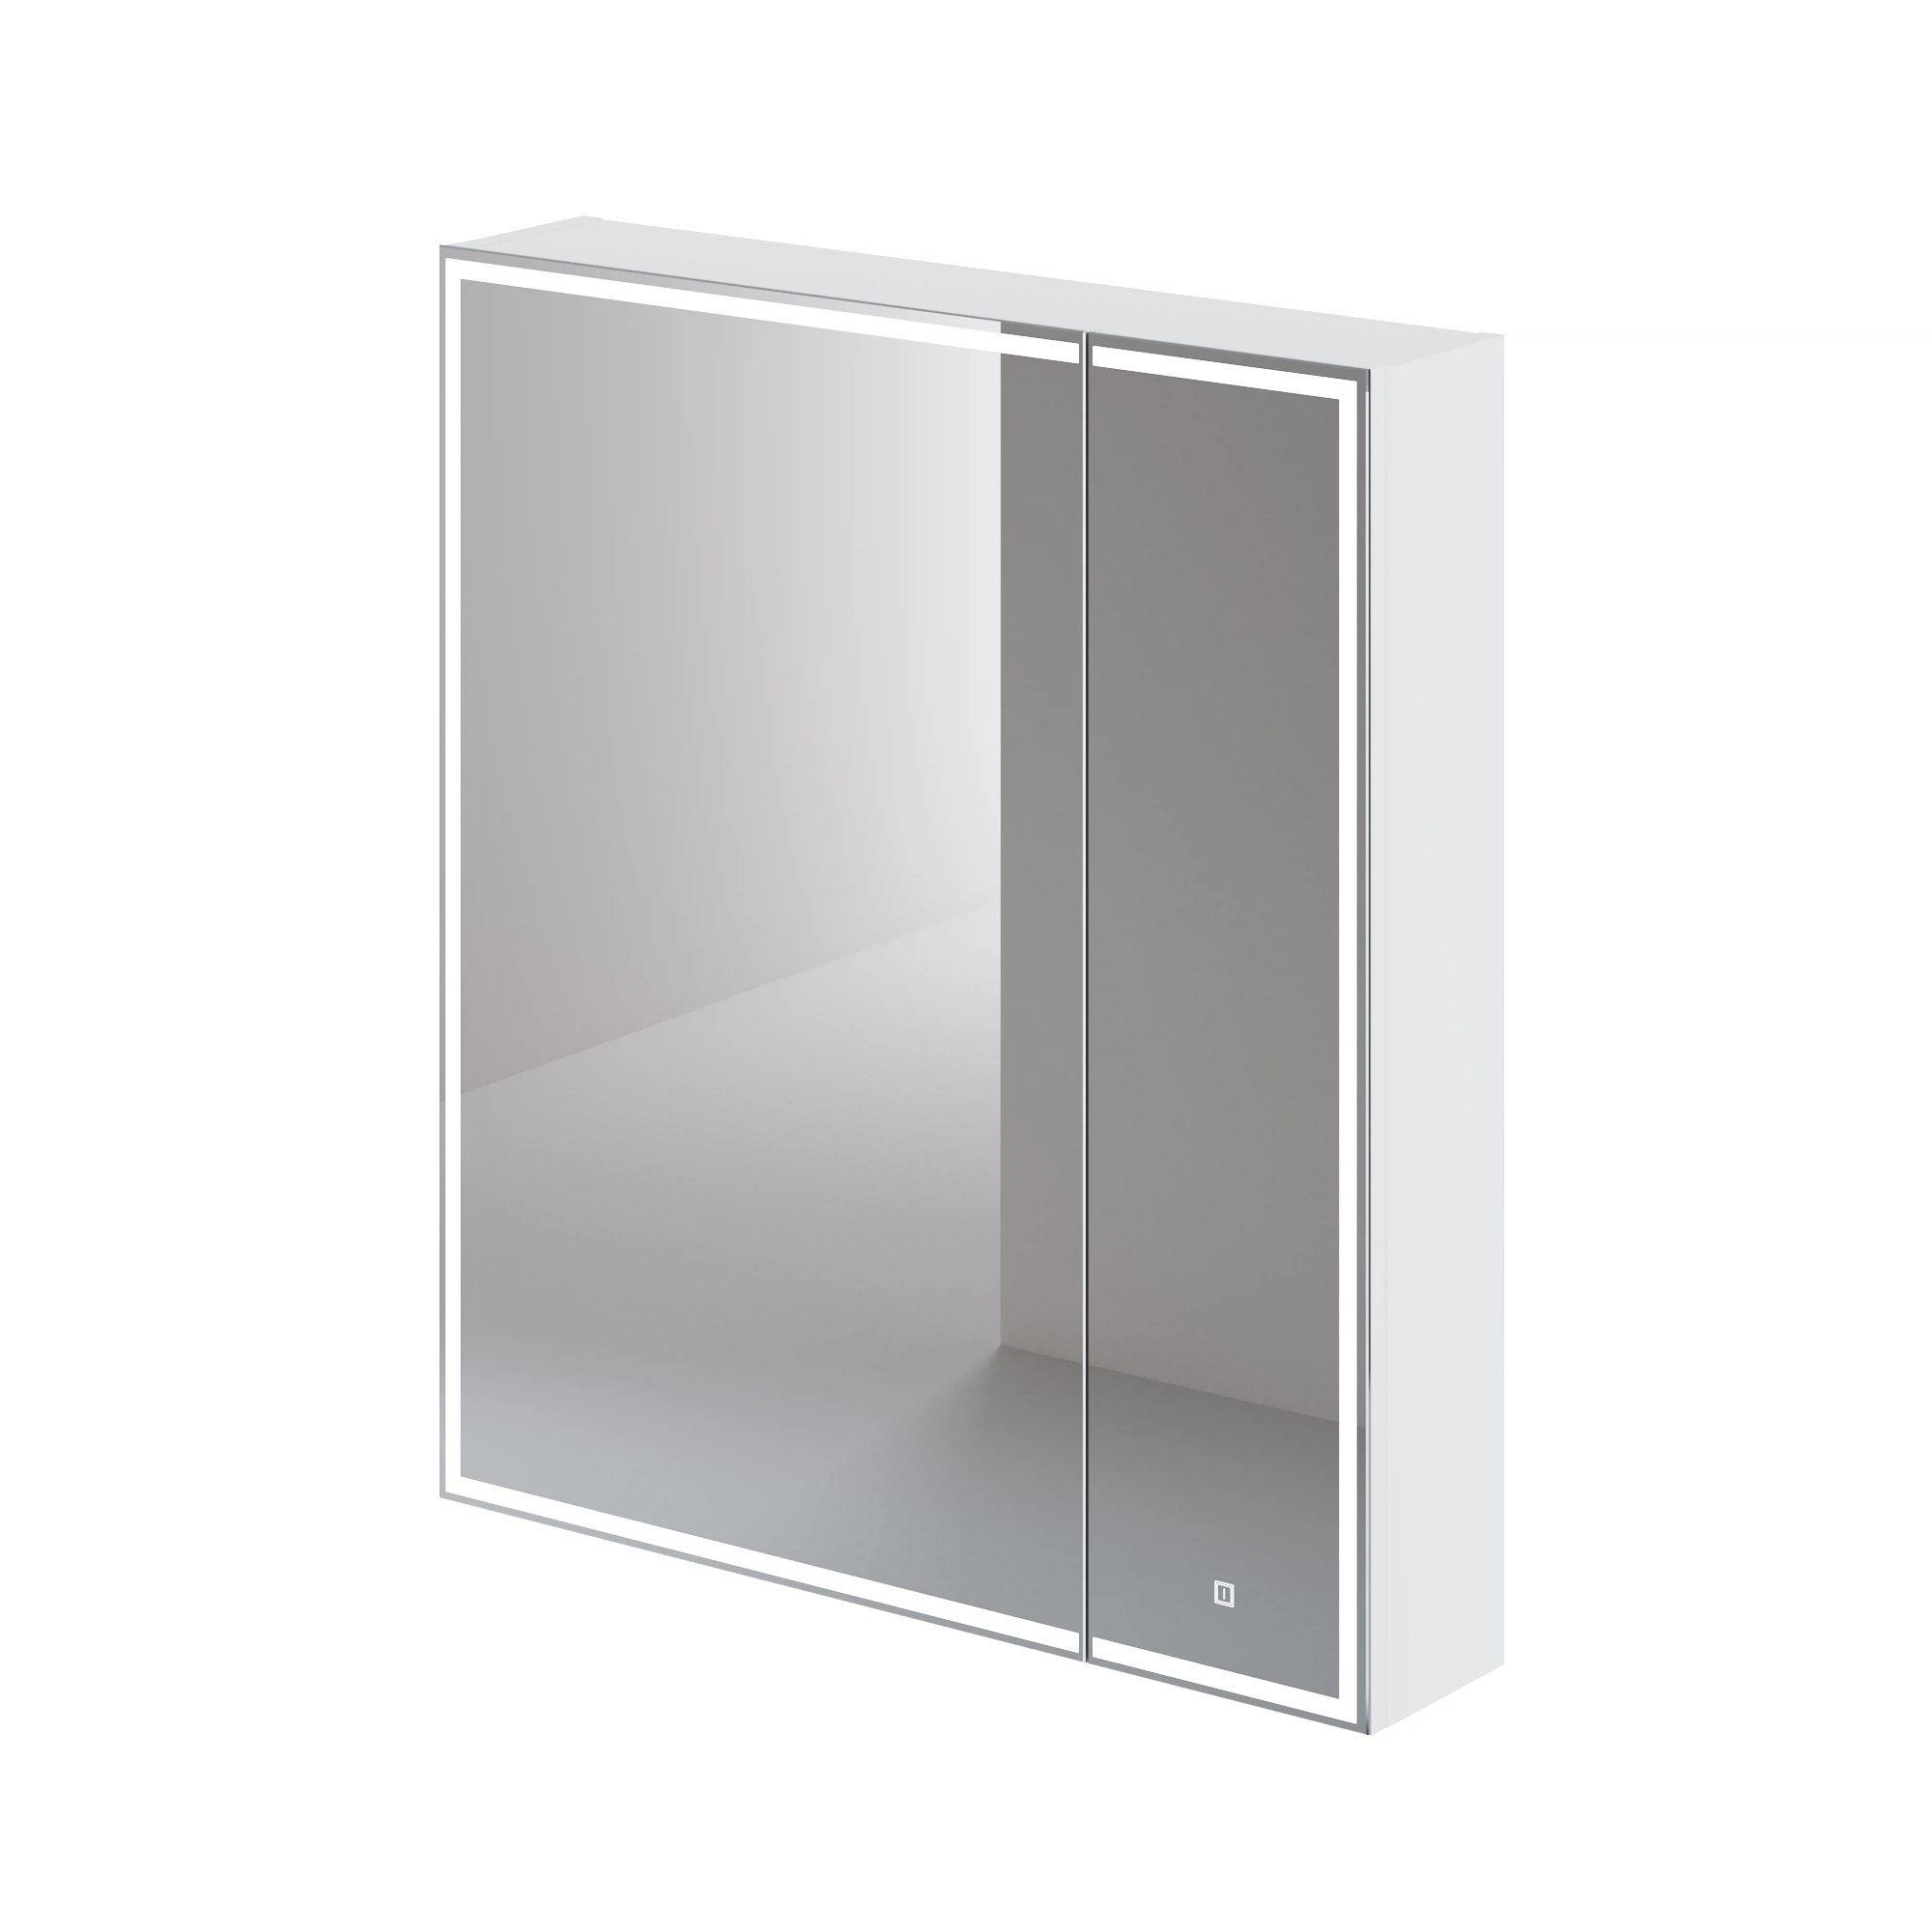 Зеркальный шкаф Итана Luce 4657792953784 700*790 мм (белый) с подсветкой